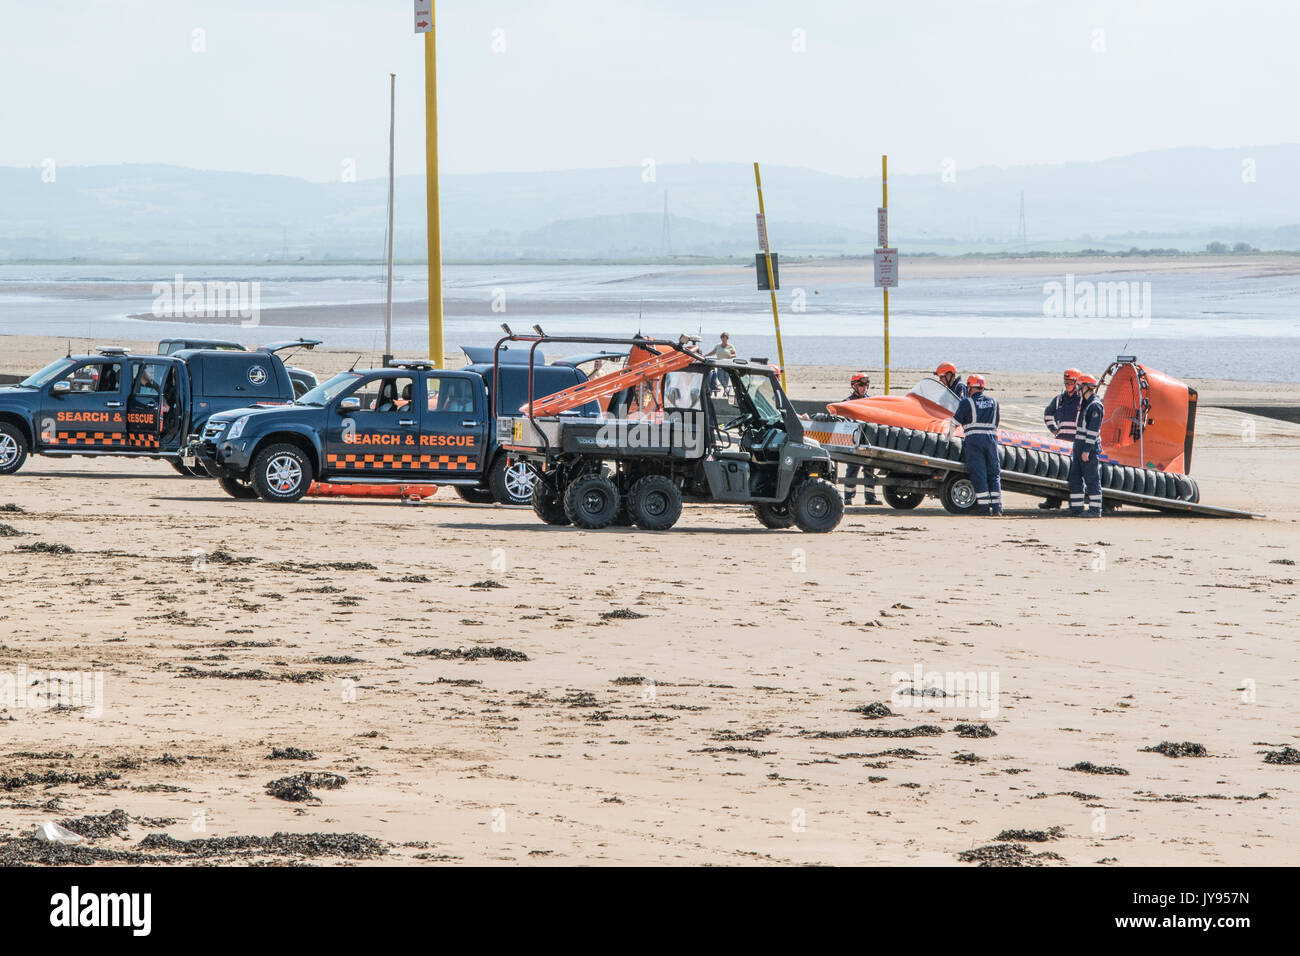 Burnham on Sea Bereich Rettung Boot Üben von Manövern am Strand Stockfoto